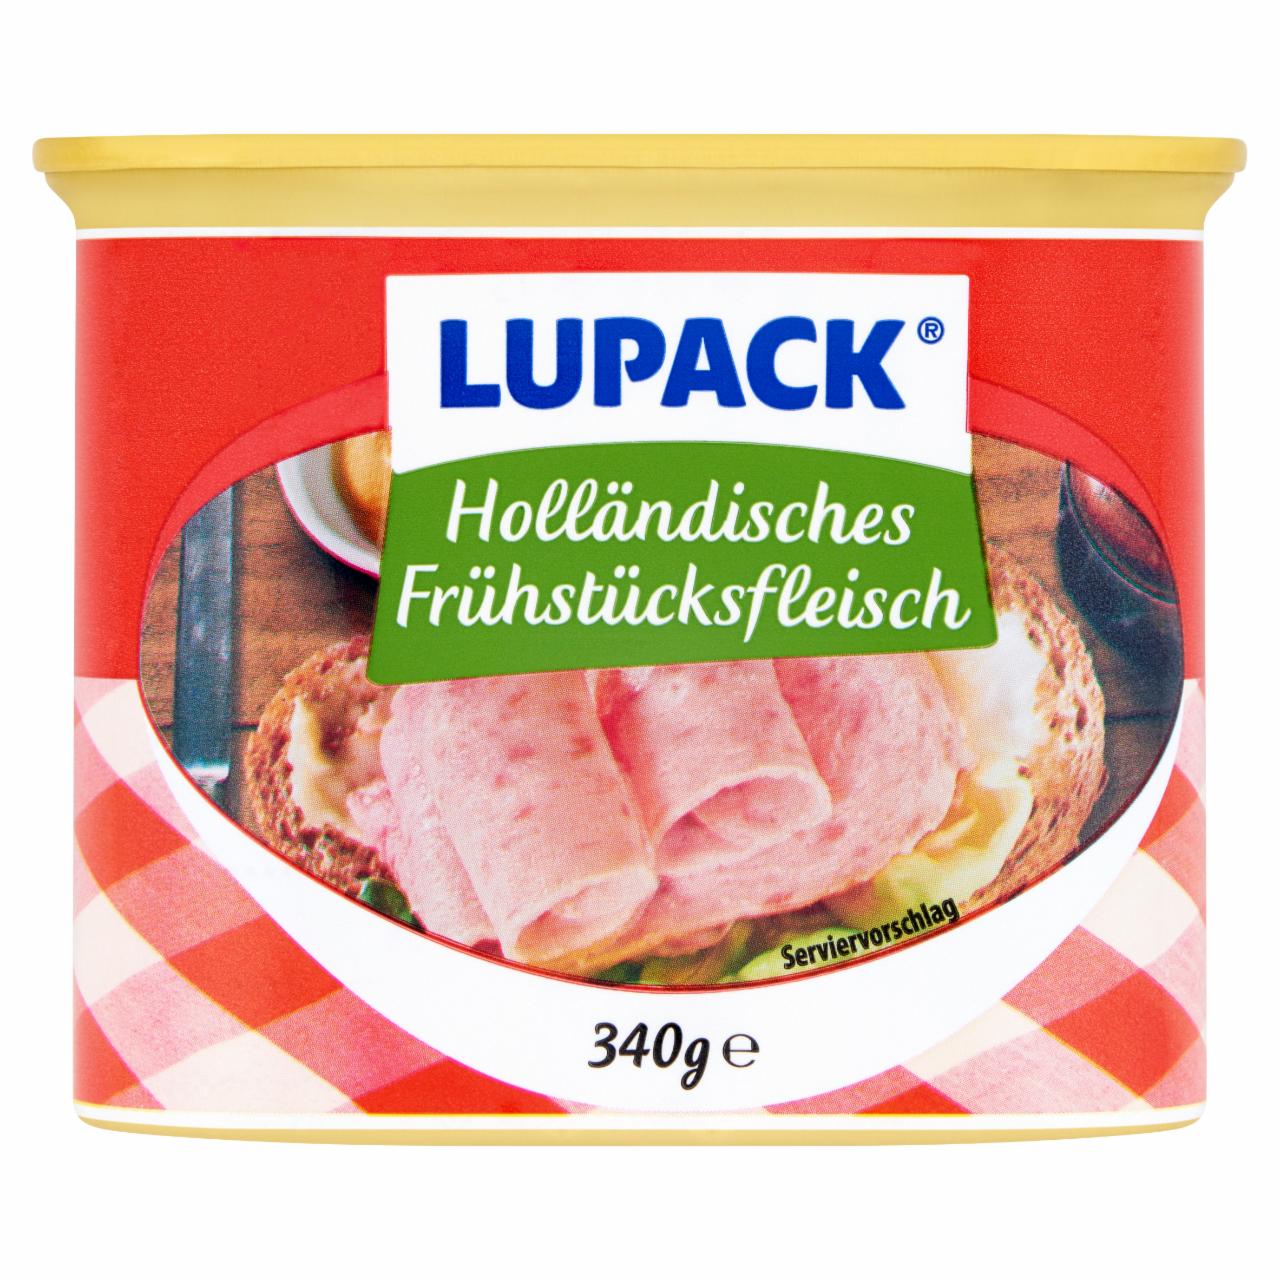 Képek - Lupack szendvicshús 340 g